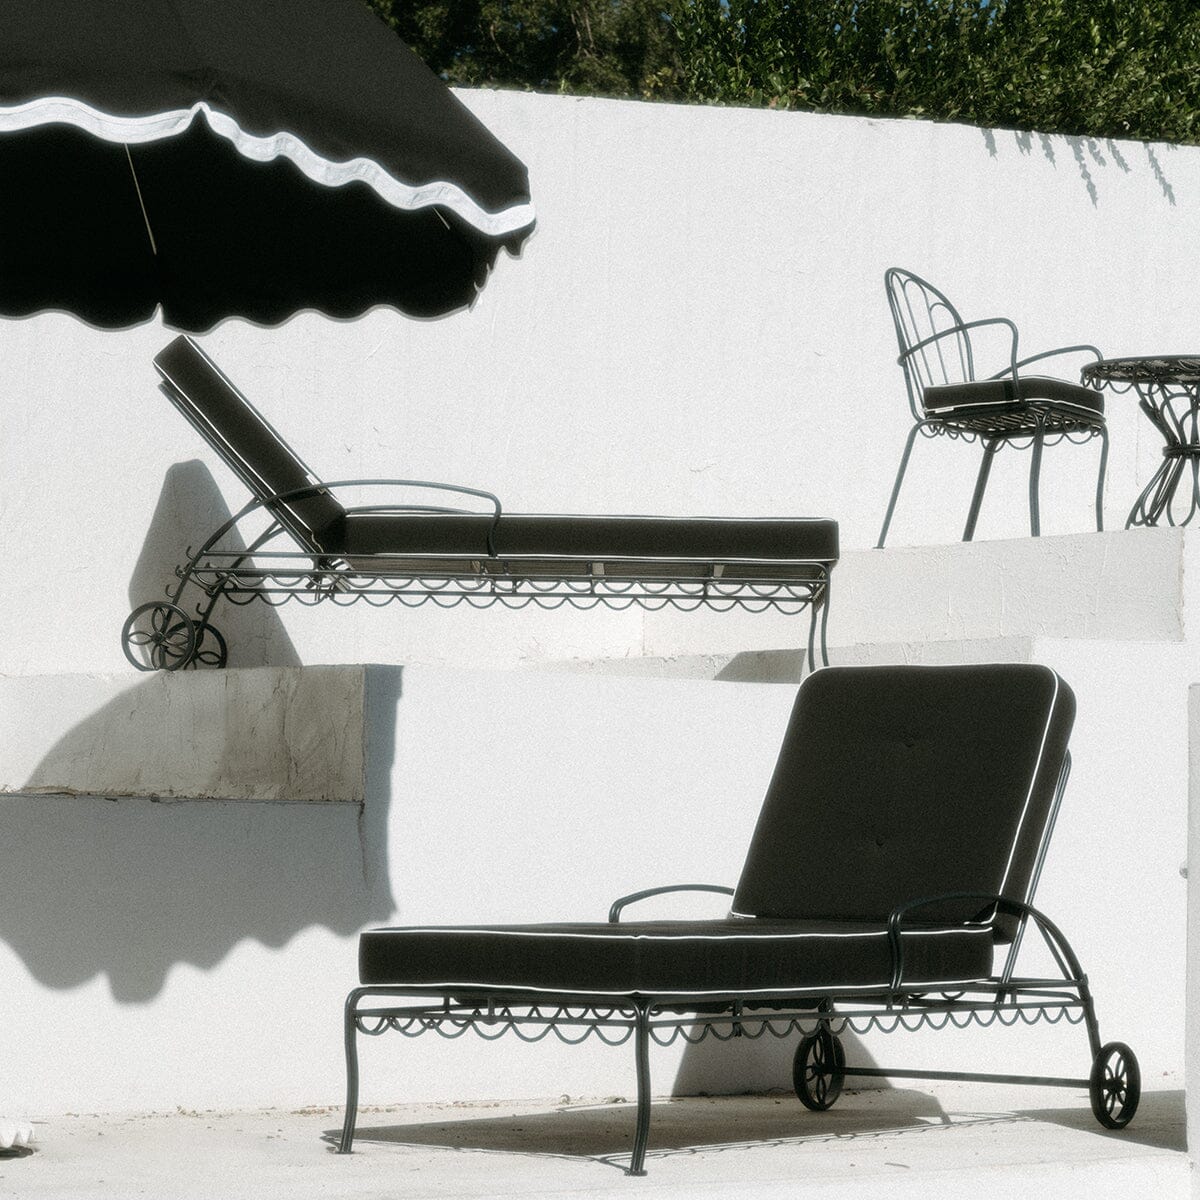 The Al Fresco Sun Lounger Cushion - Rivie Black Al Fresco Sun Lounger Cushions Business & Pleasure Co Aus 